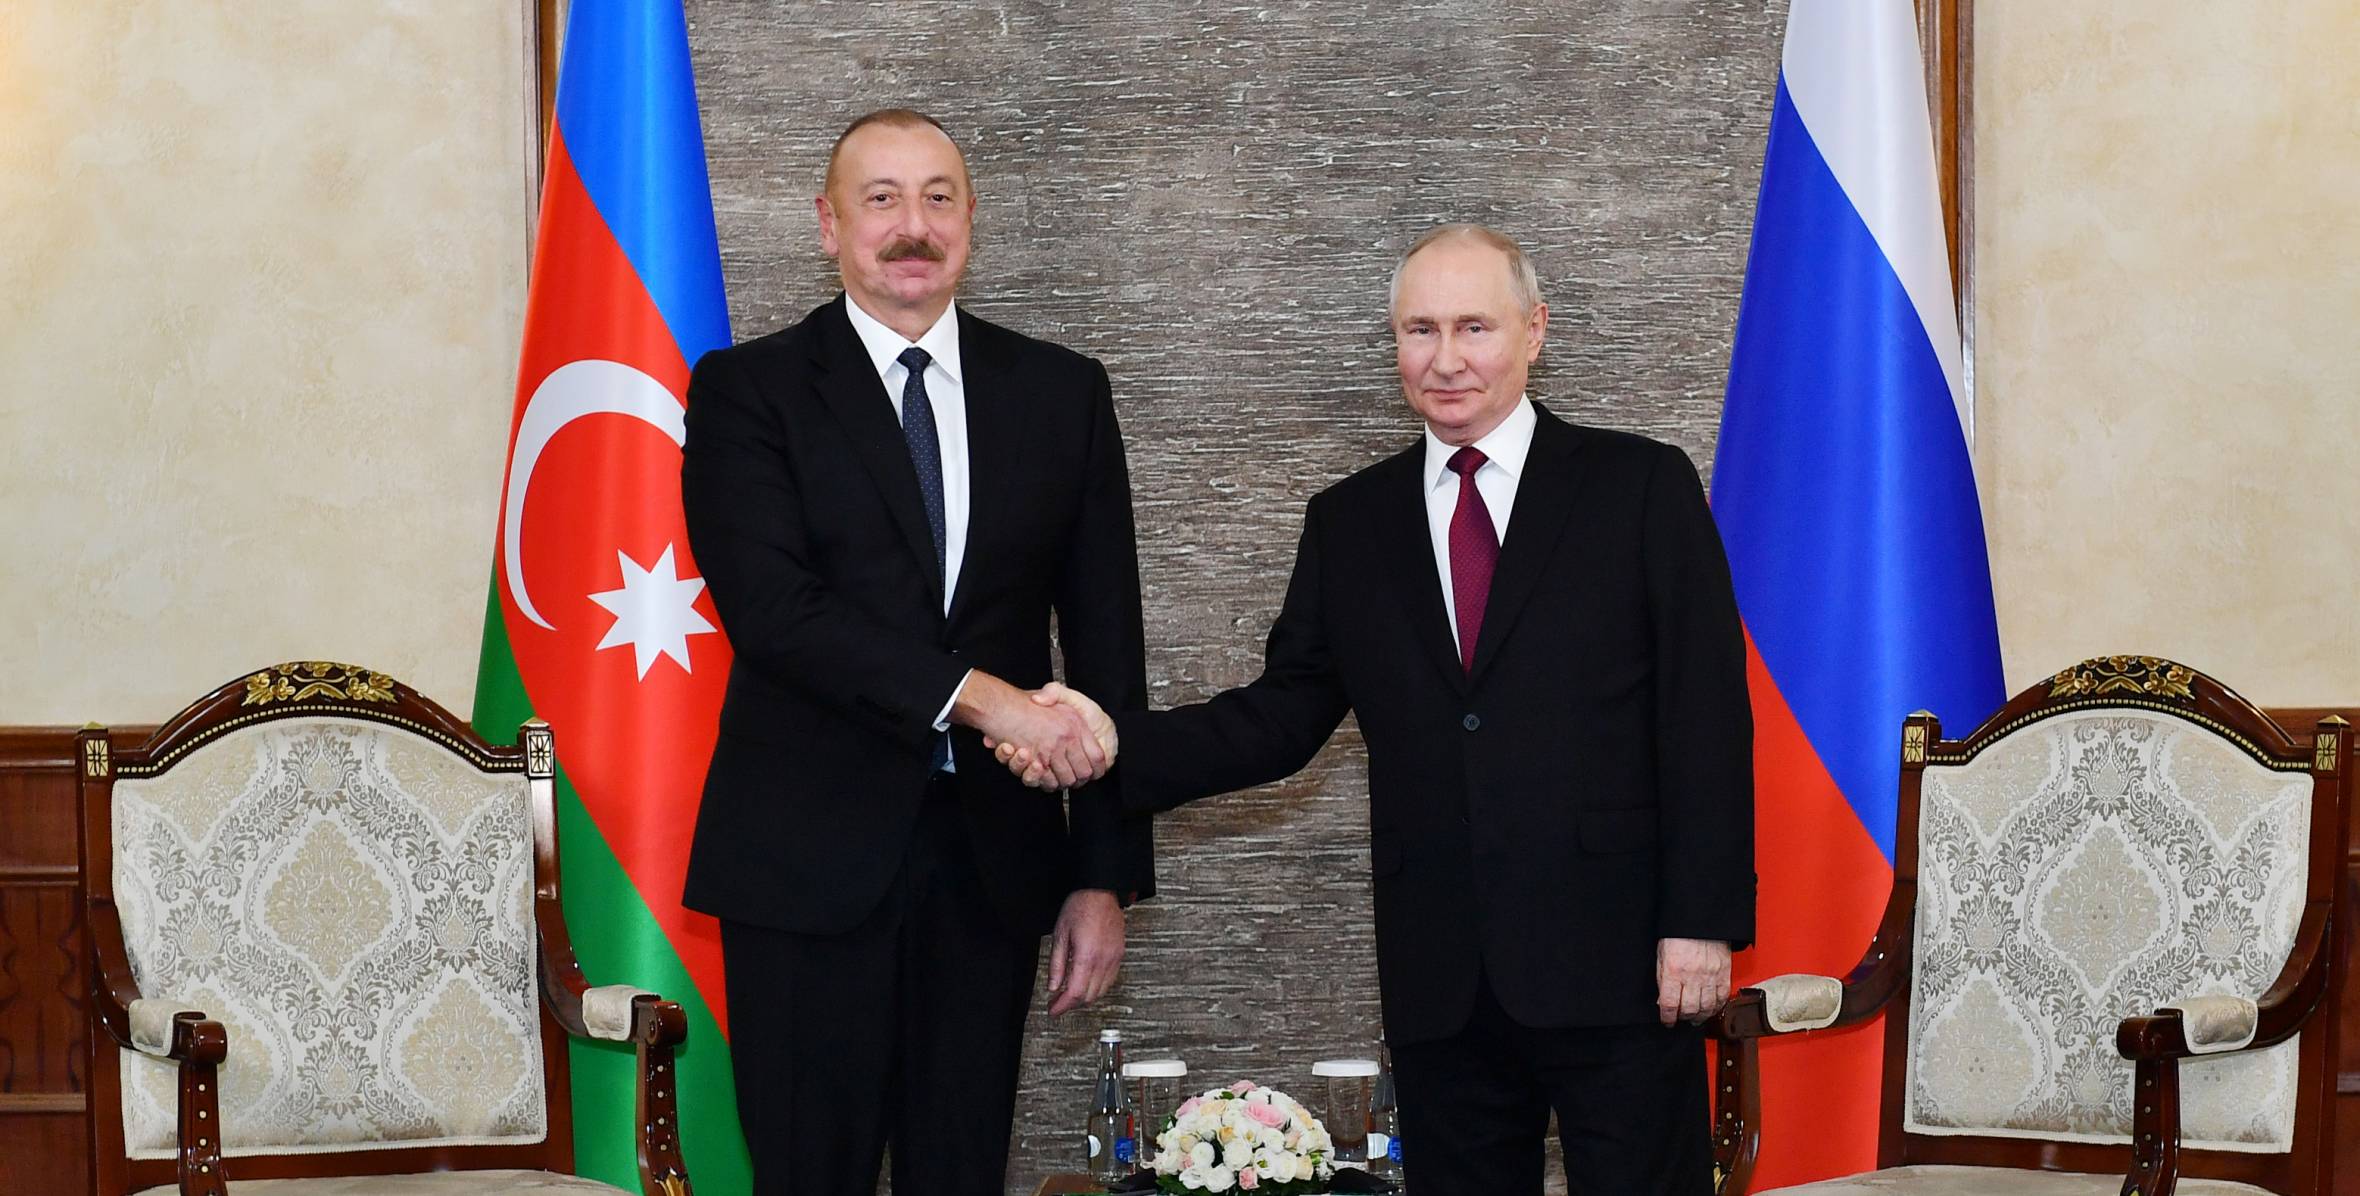 Ilham Aliyev’s meeting with President of Russia Vladimir Putin was held in Bishkek